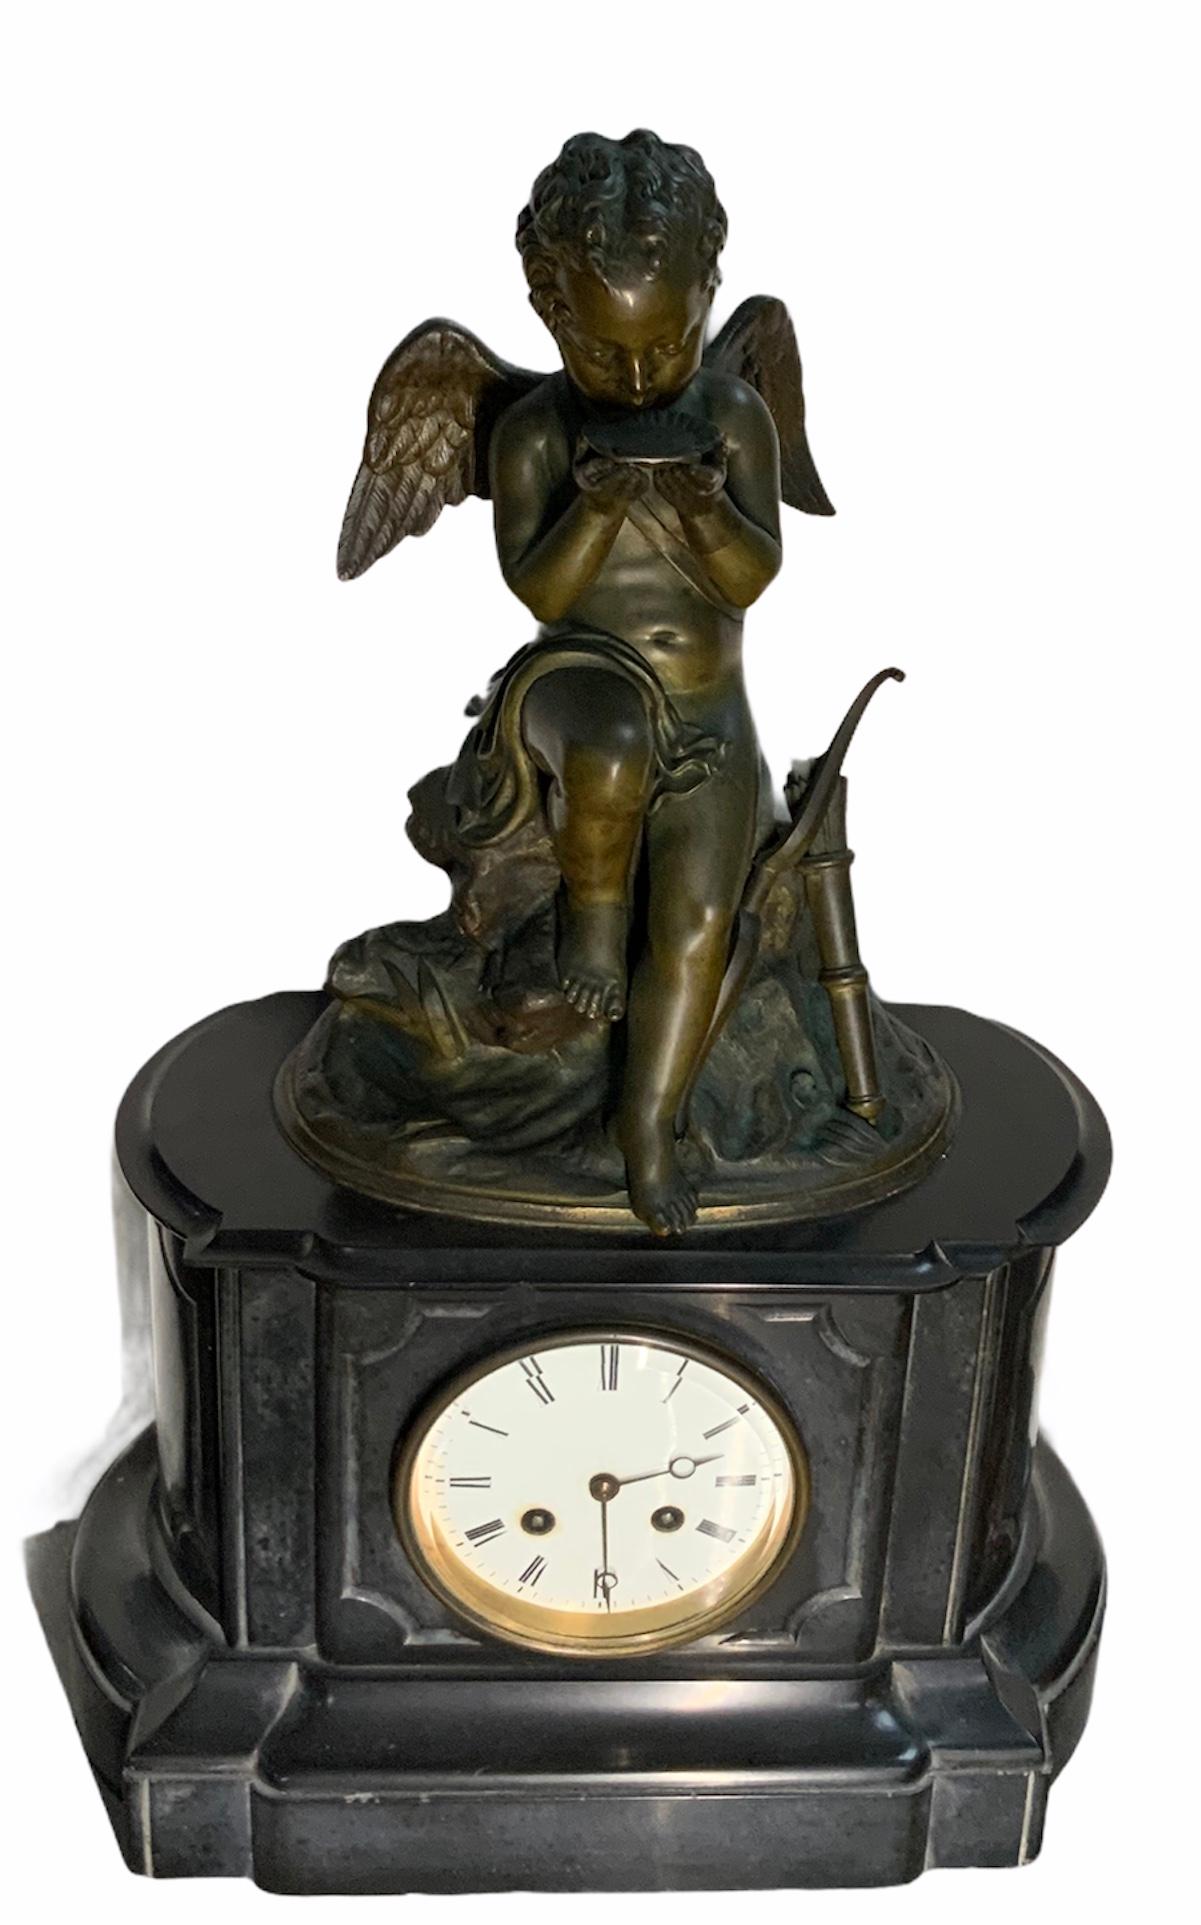 Dies ist ein Französisch figuralen patinierten Bronze-Skulptur Kaminsims Uhr eines geflügelten Cherub Jäger von Lemire Charles Gabriel Sauvage. Der durstige Cherub sitzt über einem großen Felsen mit einigen Blättern und trinkt Wasser aus einer